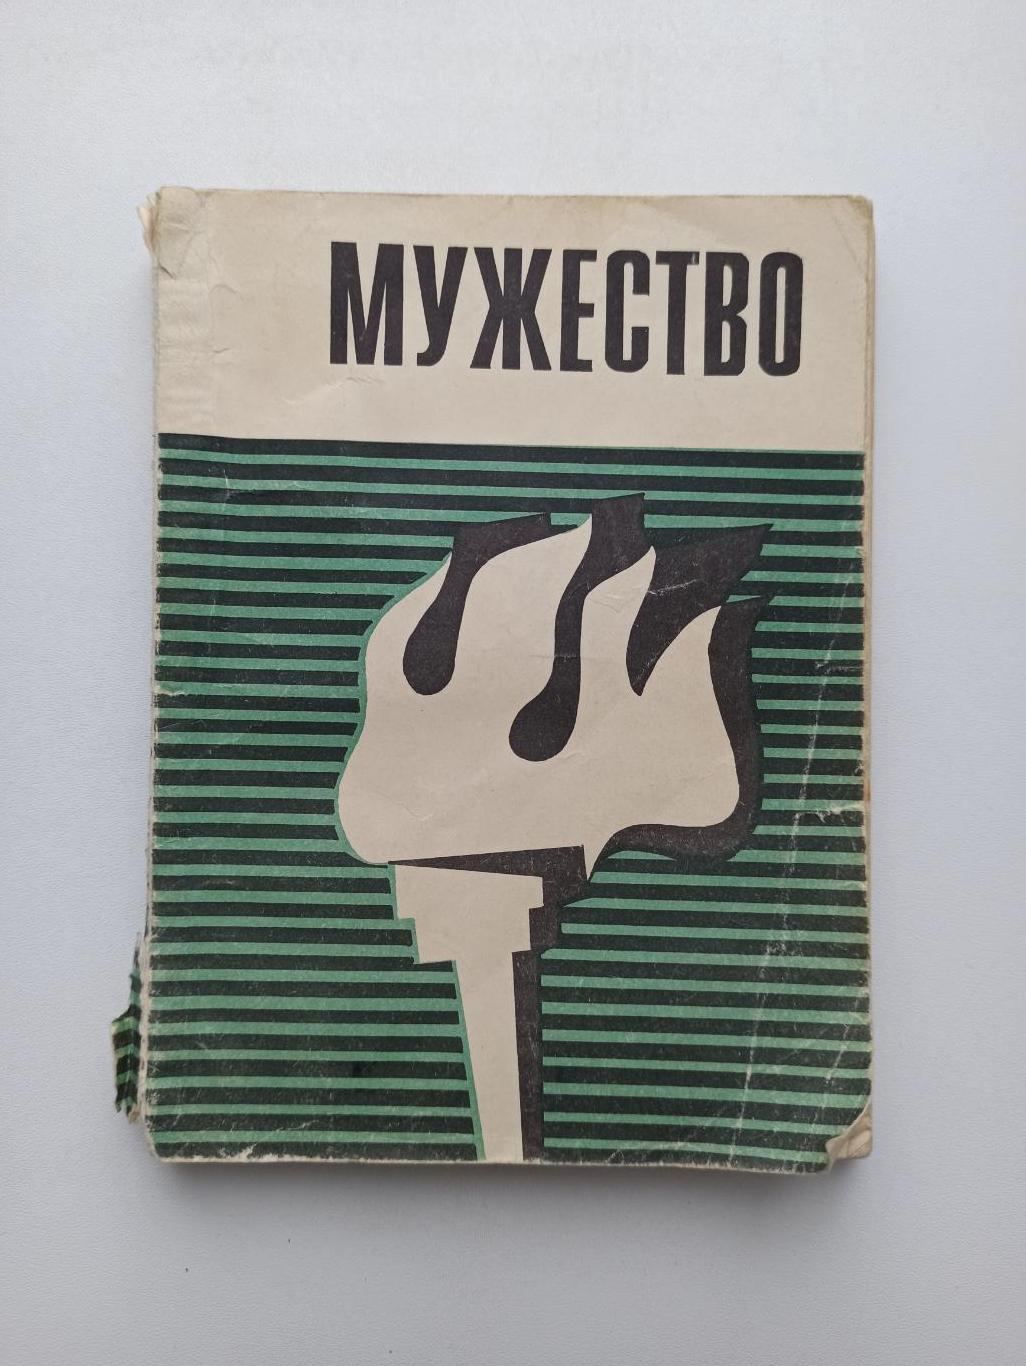 Спорт в СССР,Мужество, сборник очерков, 1970г., редкая книга